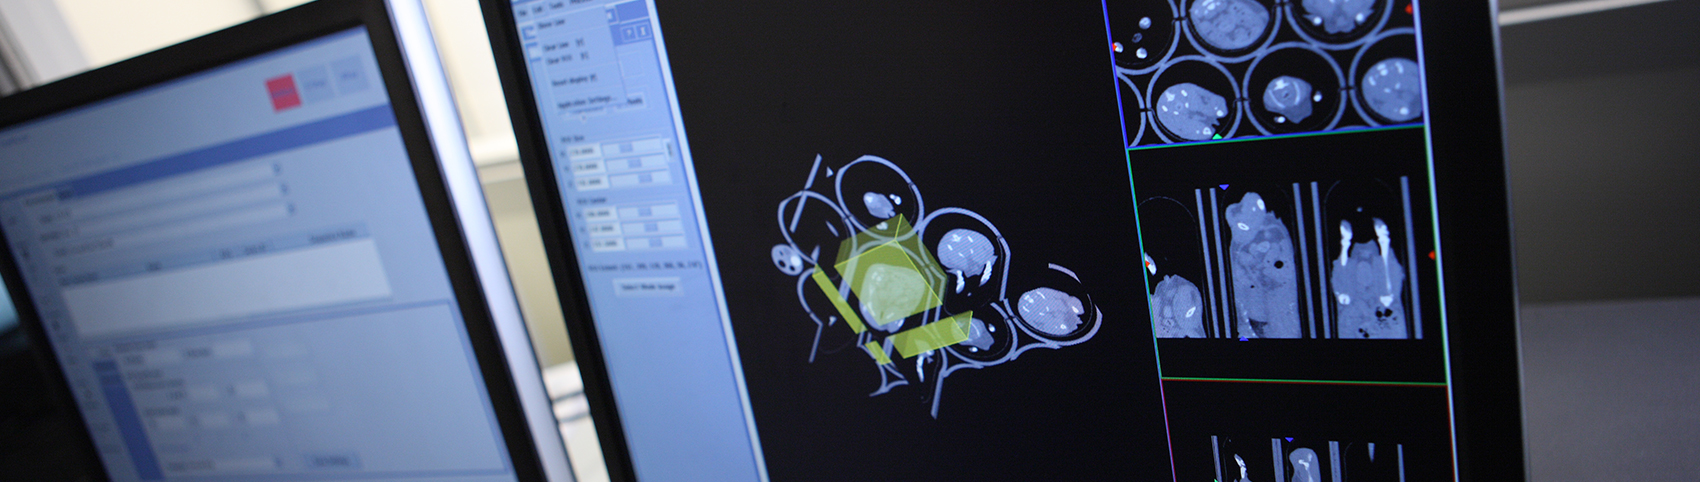 Imagen de imágenes por bioluminiscencia en la pantalla de una computadora